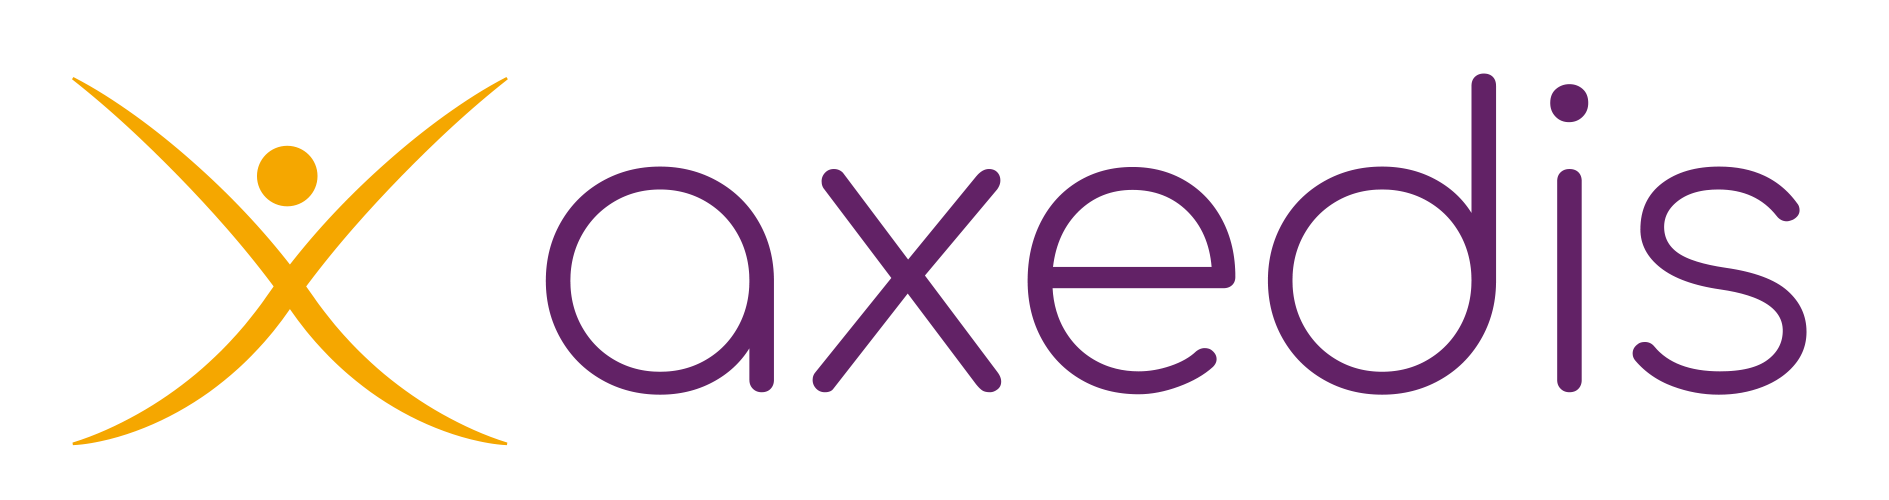 nouveau logo Axedis